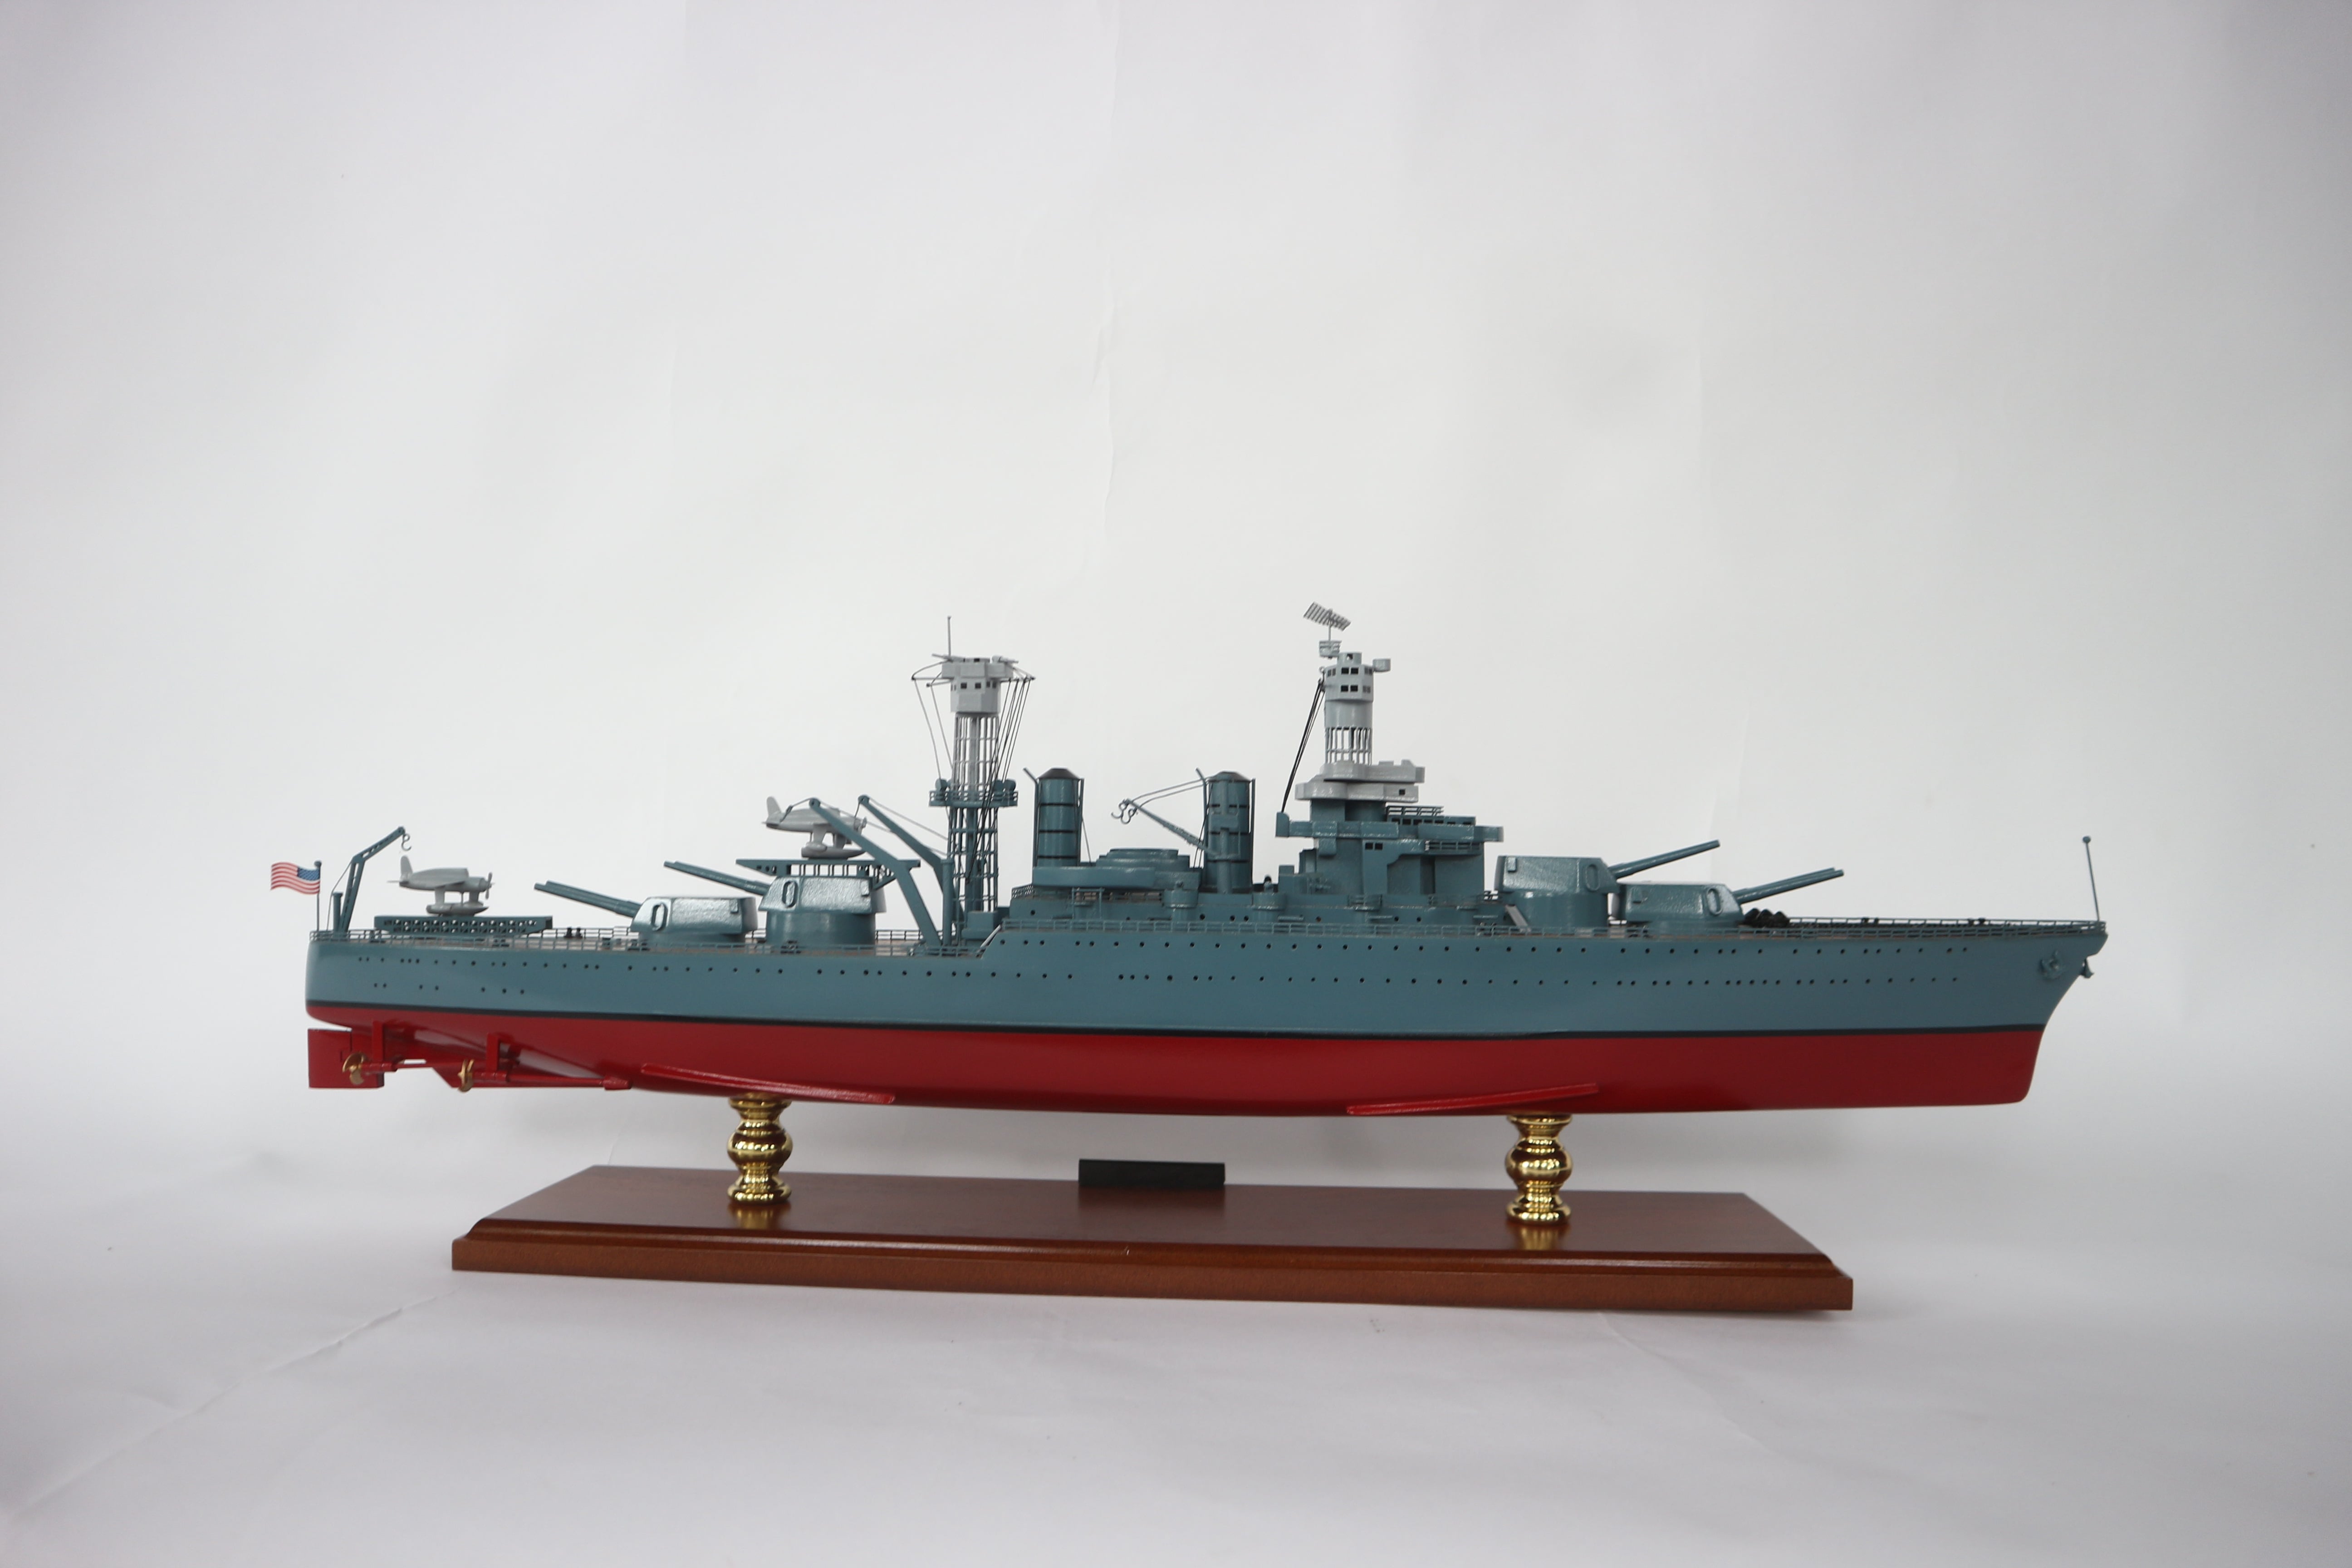 USS West Virginia Model Boat - GN